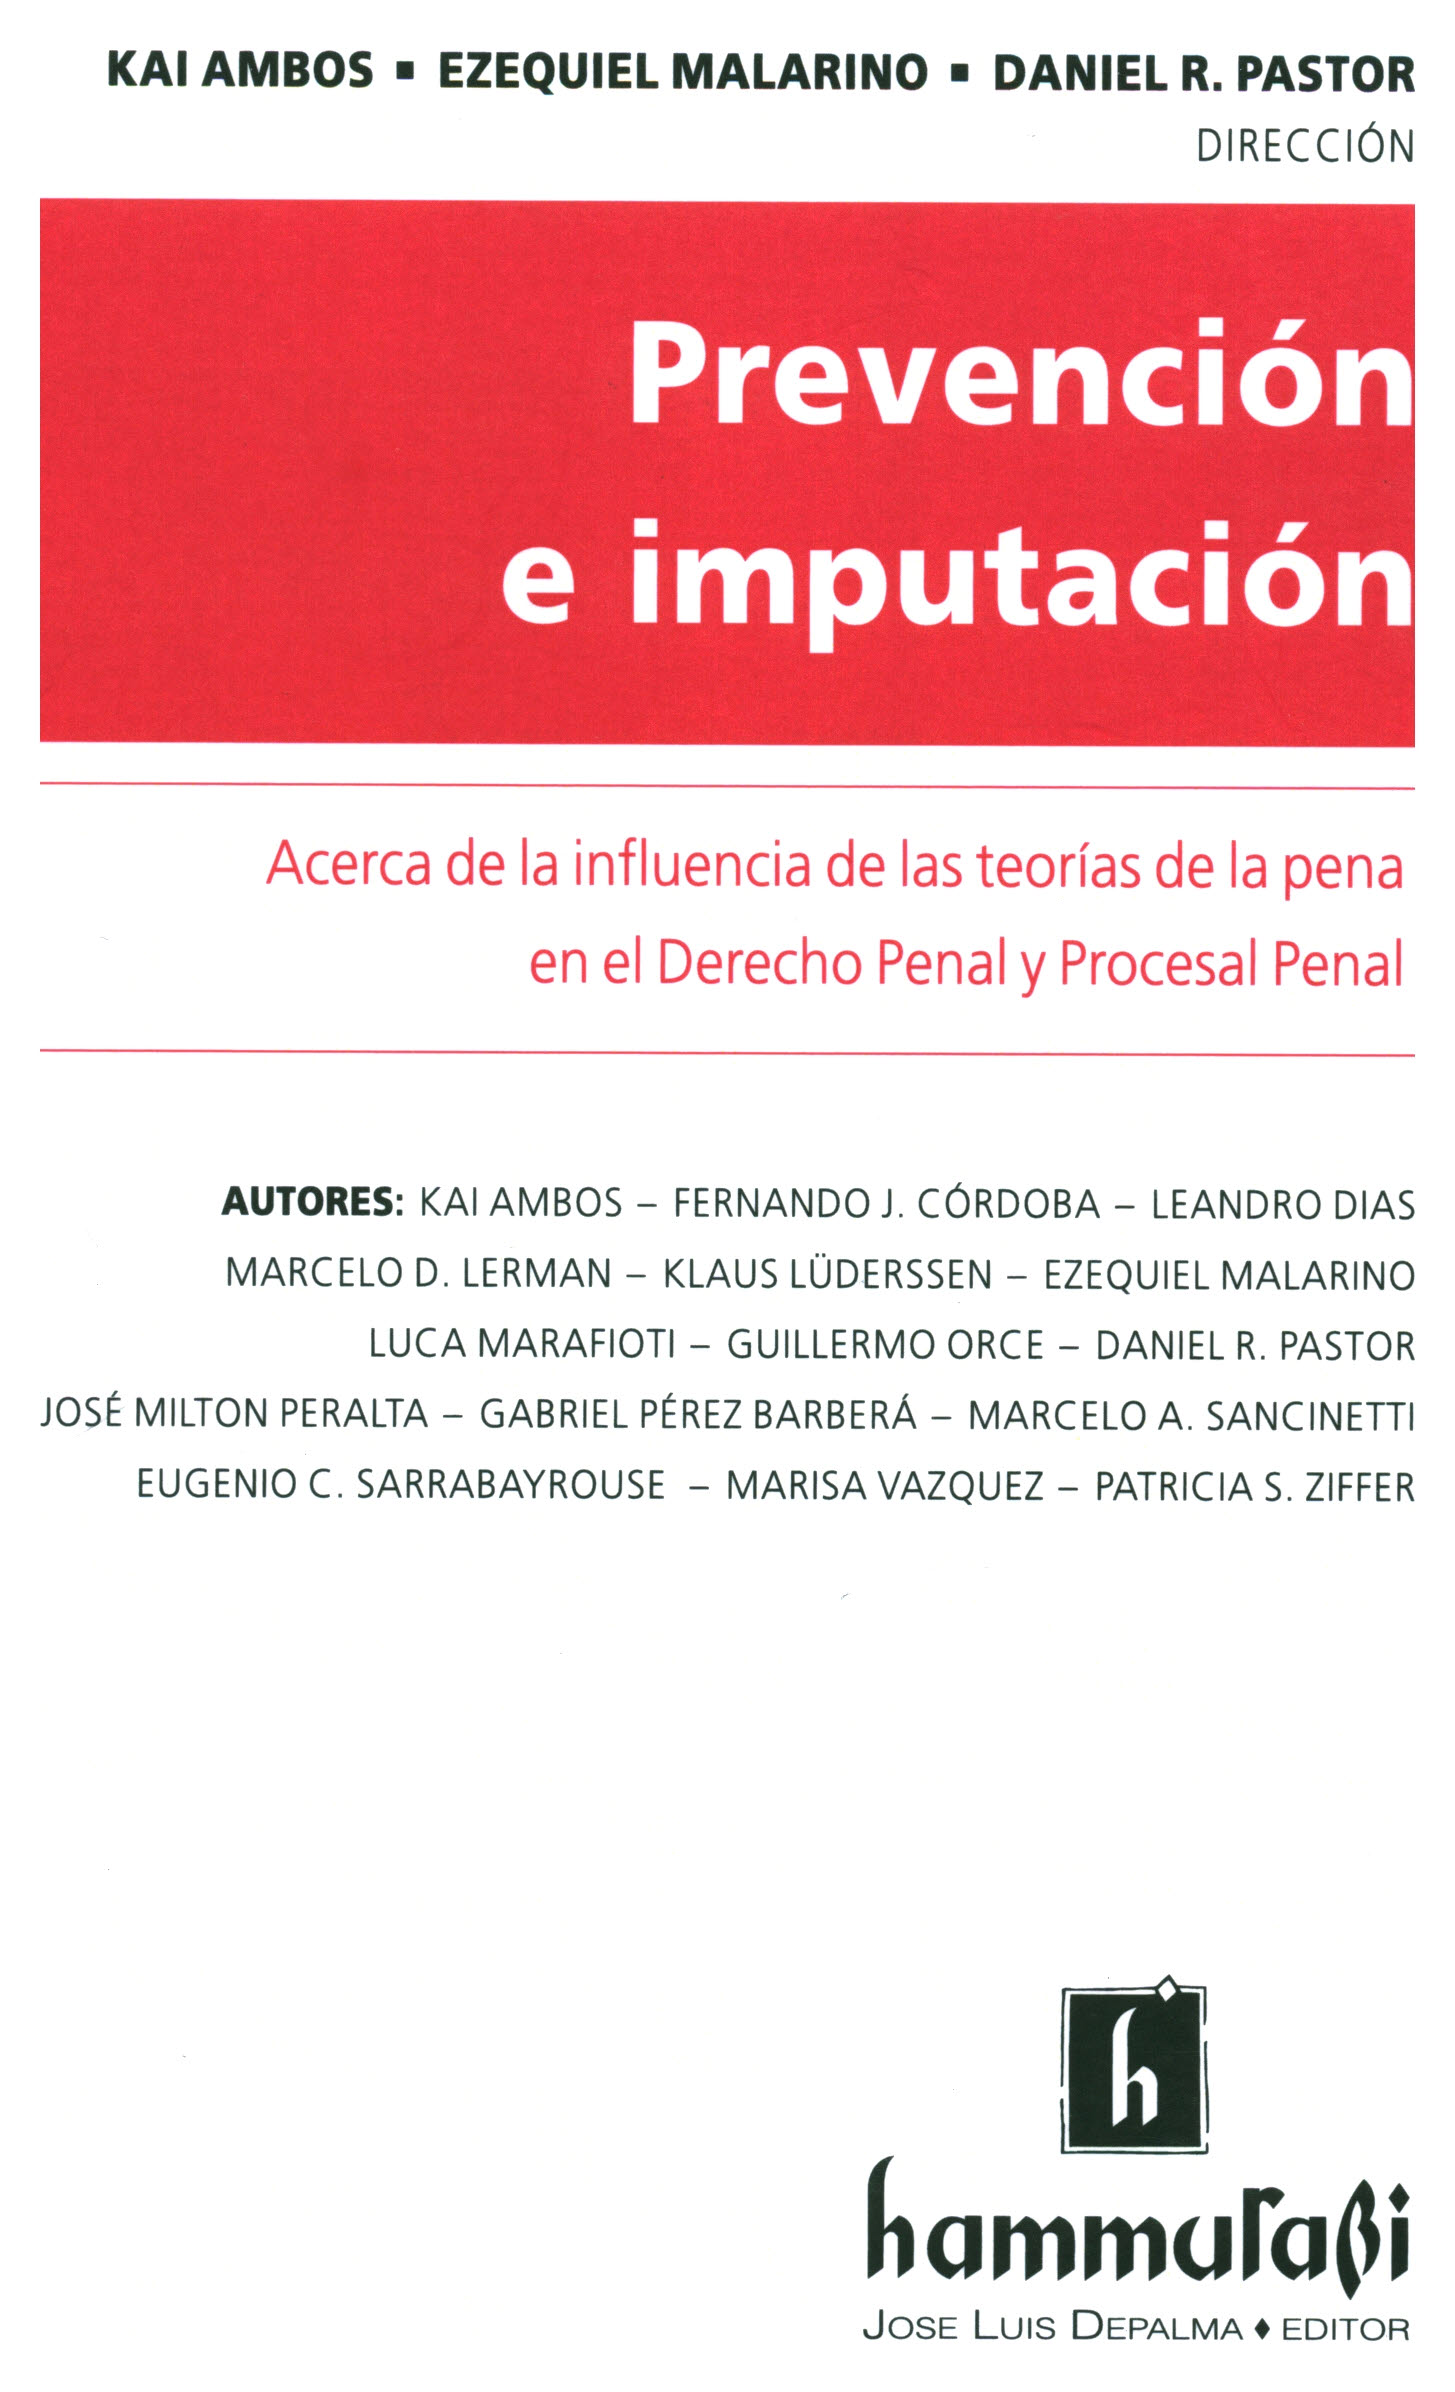 Prevención e imputación. acerca de la influencia de las teorías de la pena en el derecho penal y procesal penal